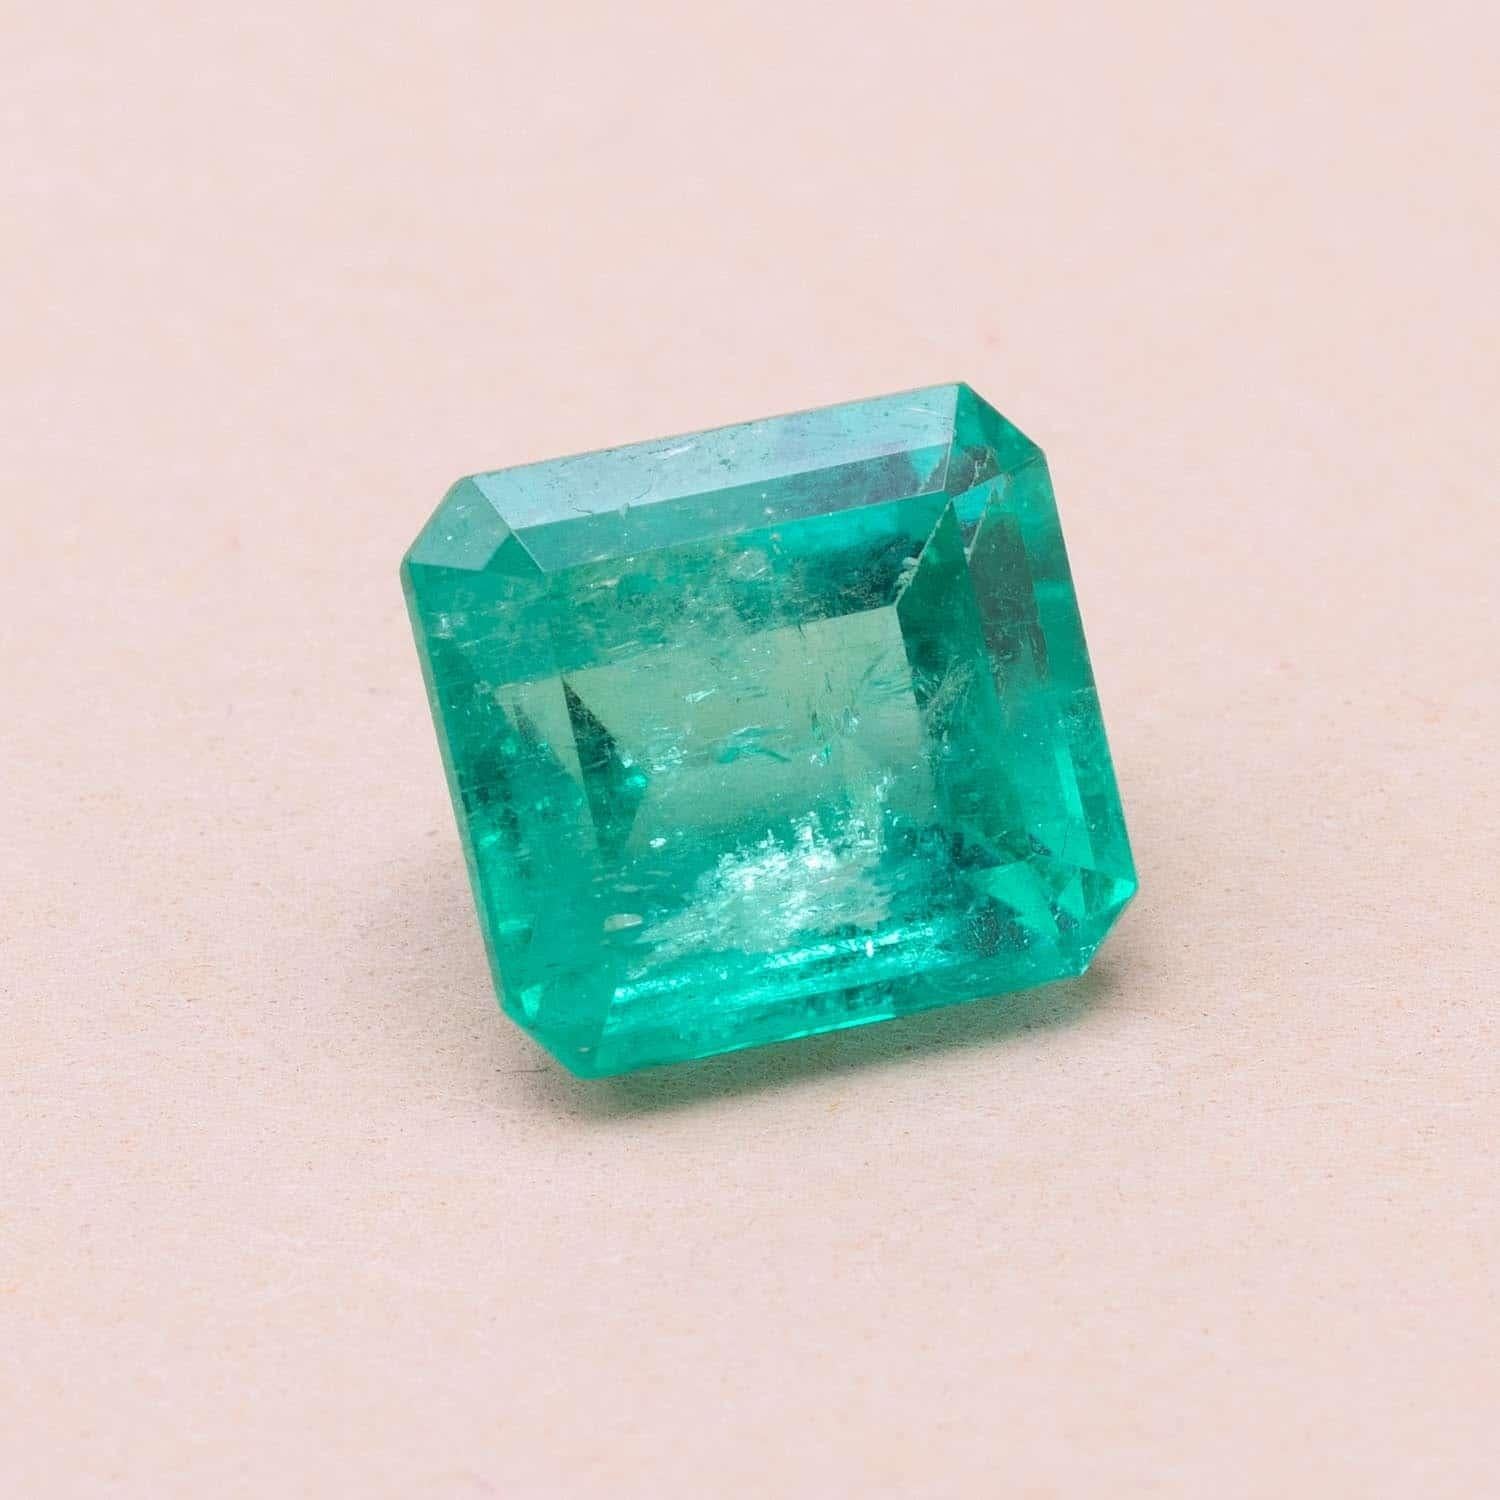 3.43 carats colombian emerald 

Dimensions : 9.37 x 8.65 x 5.73 mm 

Moderate oiling 

GEM certified 

________________________

Emeraude de Colombie pesant 3.43 cts de forme rectangulaire taillée à pans coupés
Dimensions : 9.37 x 8.65 x 5.73